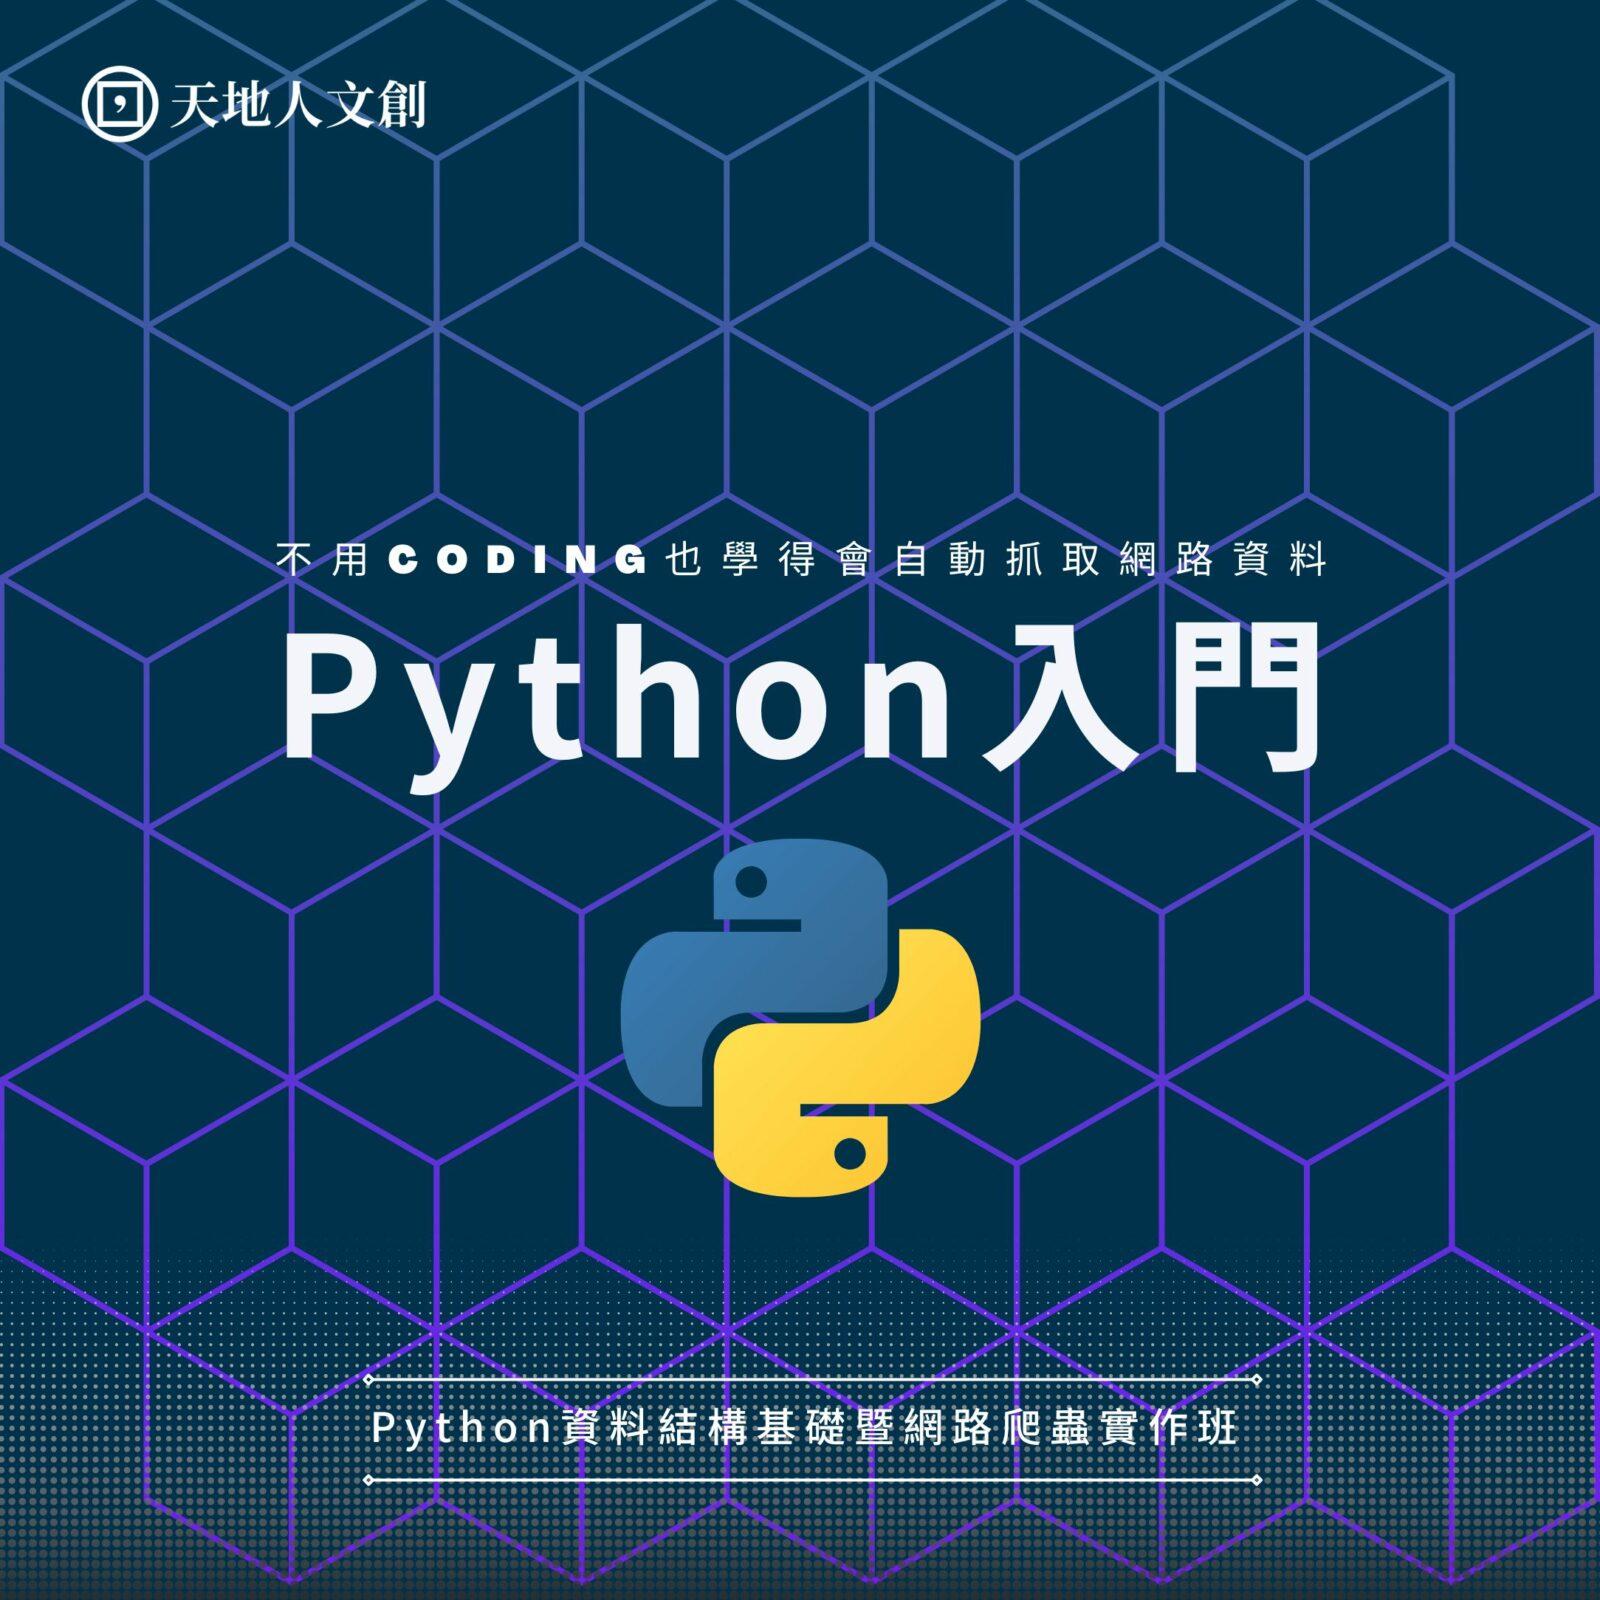 張書豪/綠茶 新手如何抓取網頁資料？Python資料結構基礎暨網路爬蟲實作班